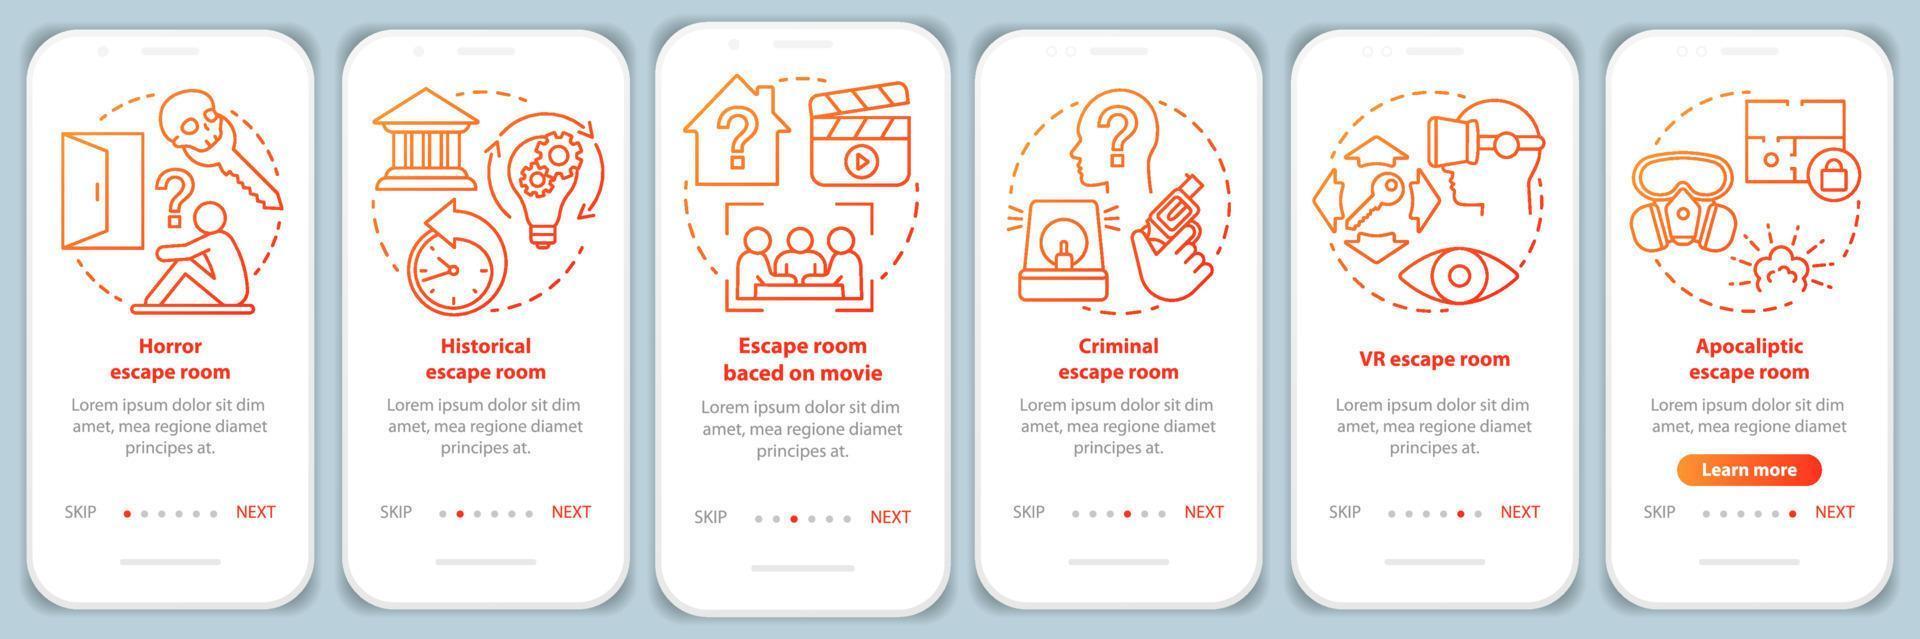 Sala de fuga na tela da página do aplicativo móvel com conceitos lineares.  Jogo da missão.